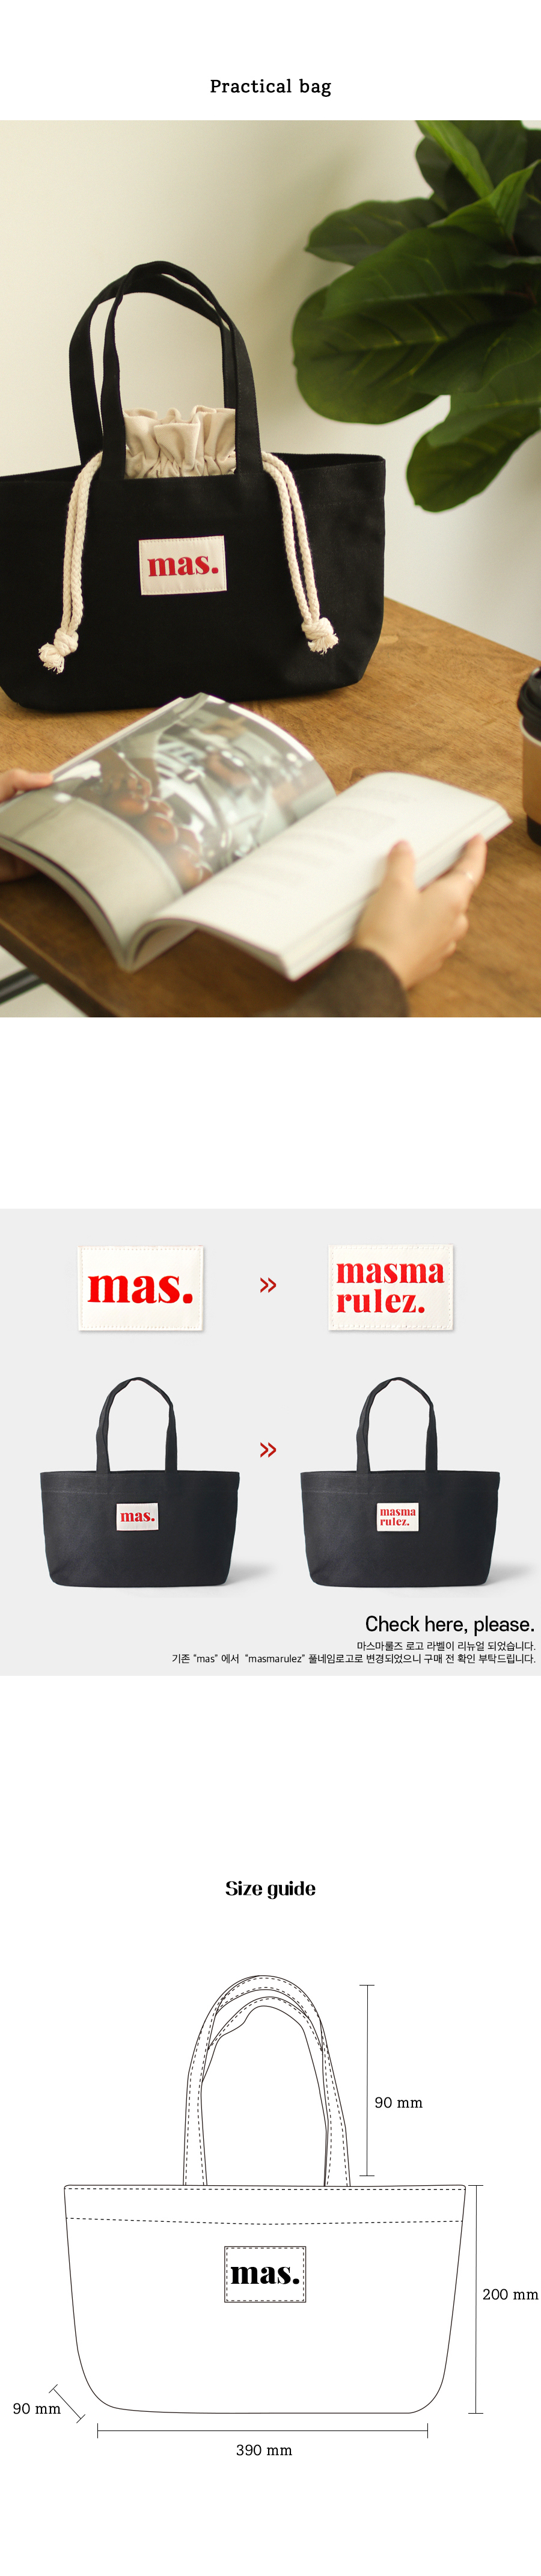 마스마룰즈(MASMARULEZ) Boat bag _ Black